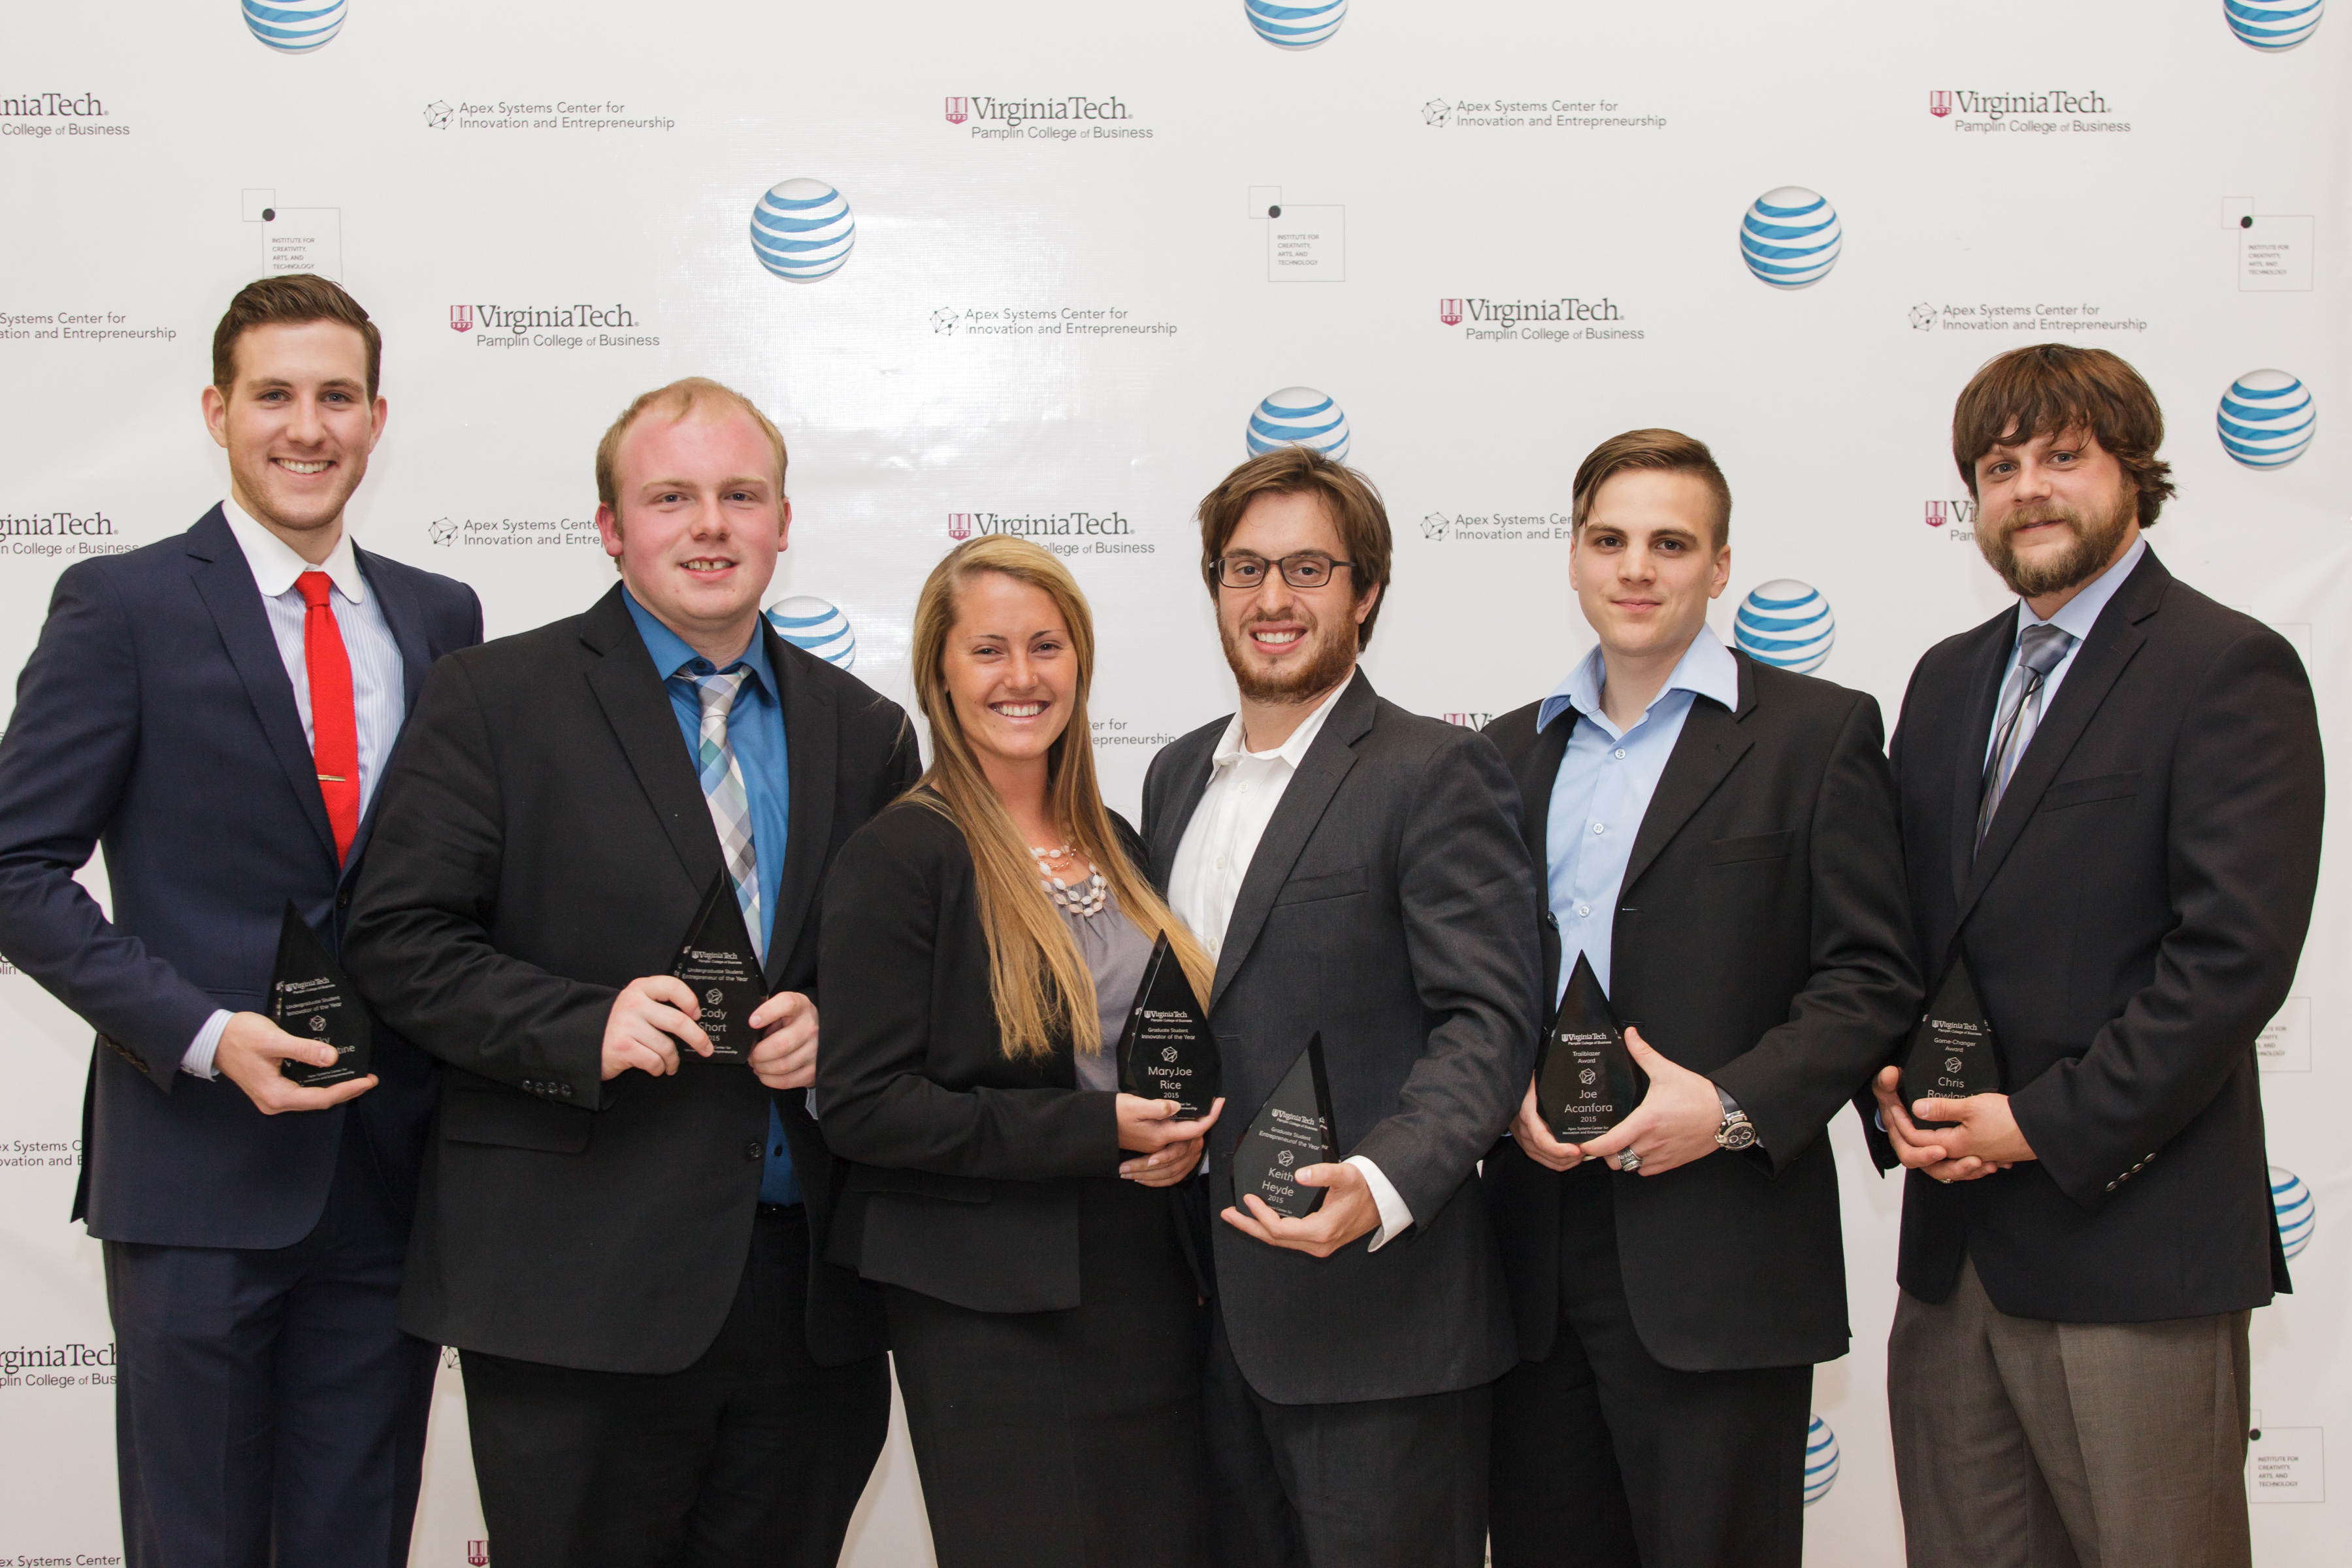 Innovation and Entrepreneurship award winners